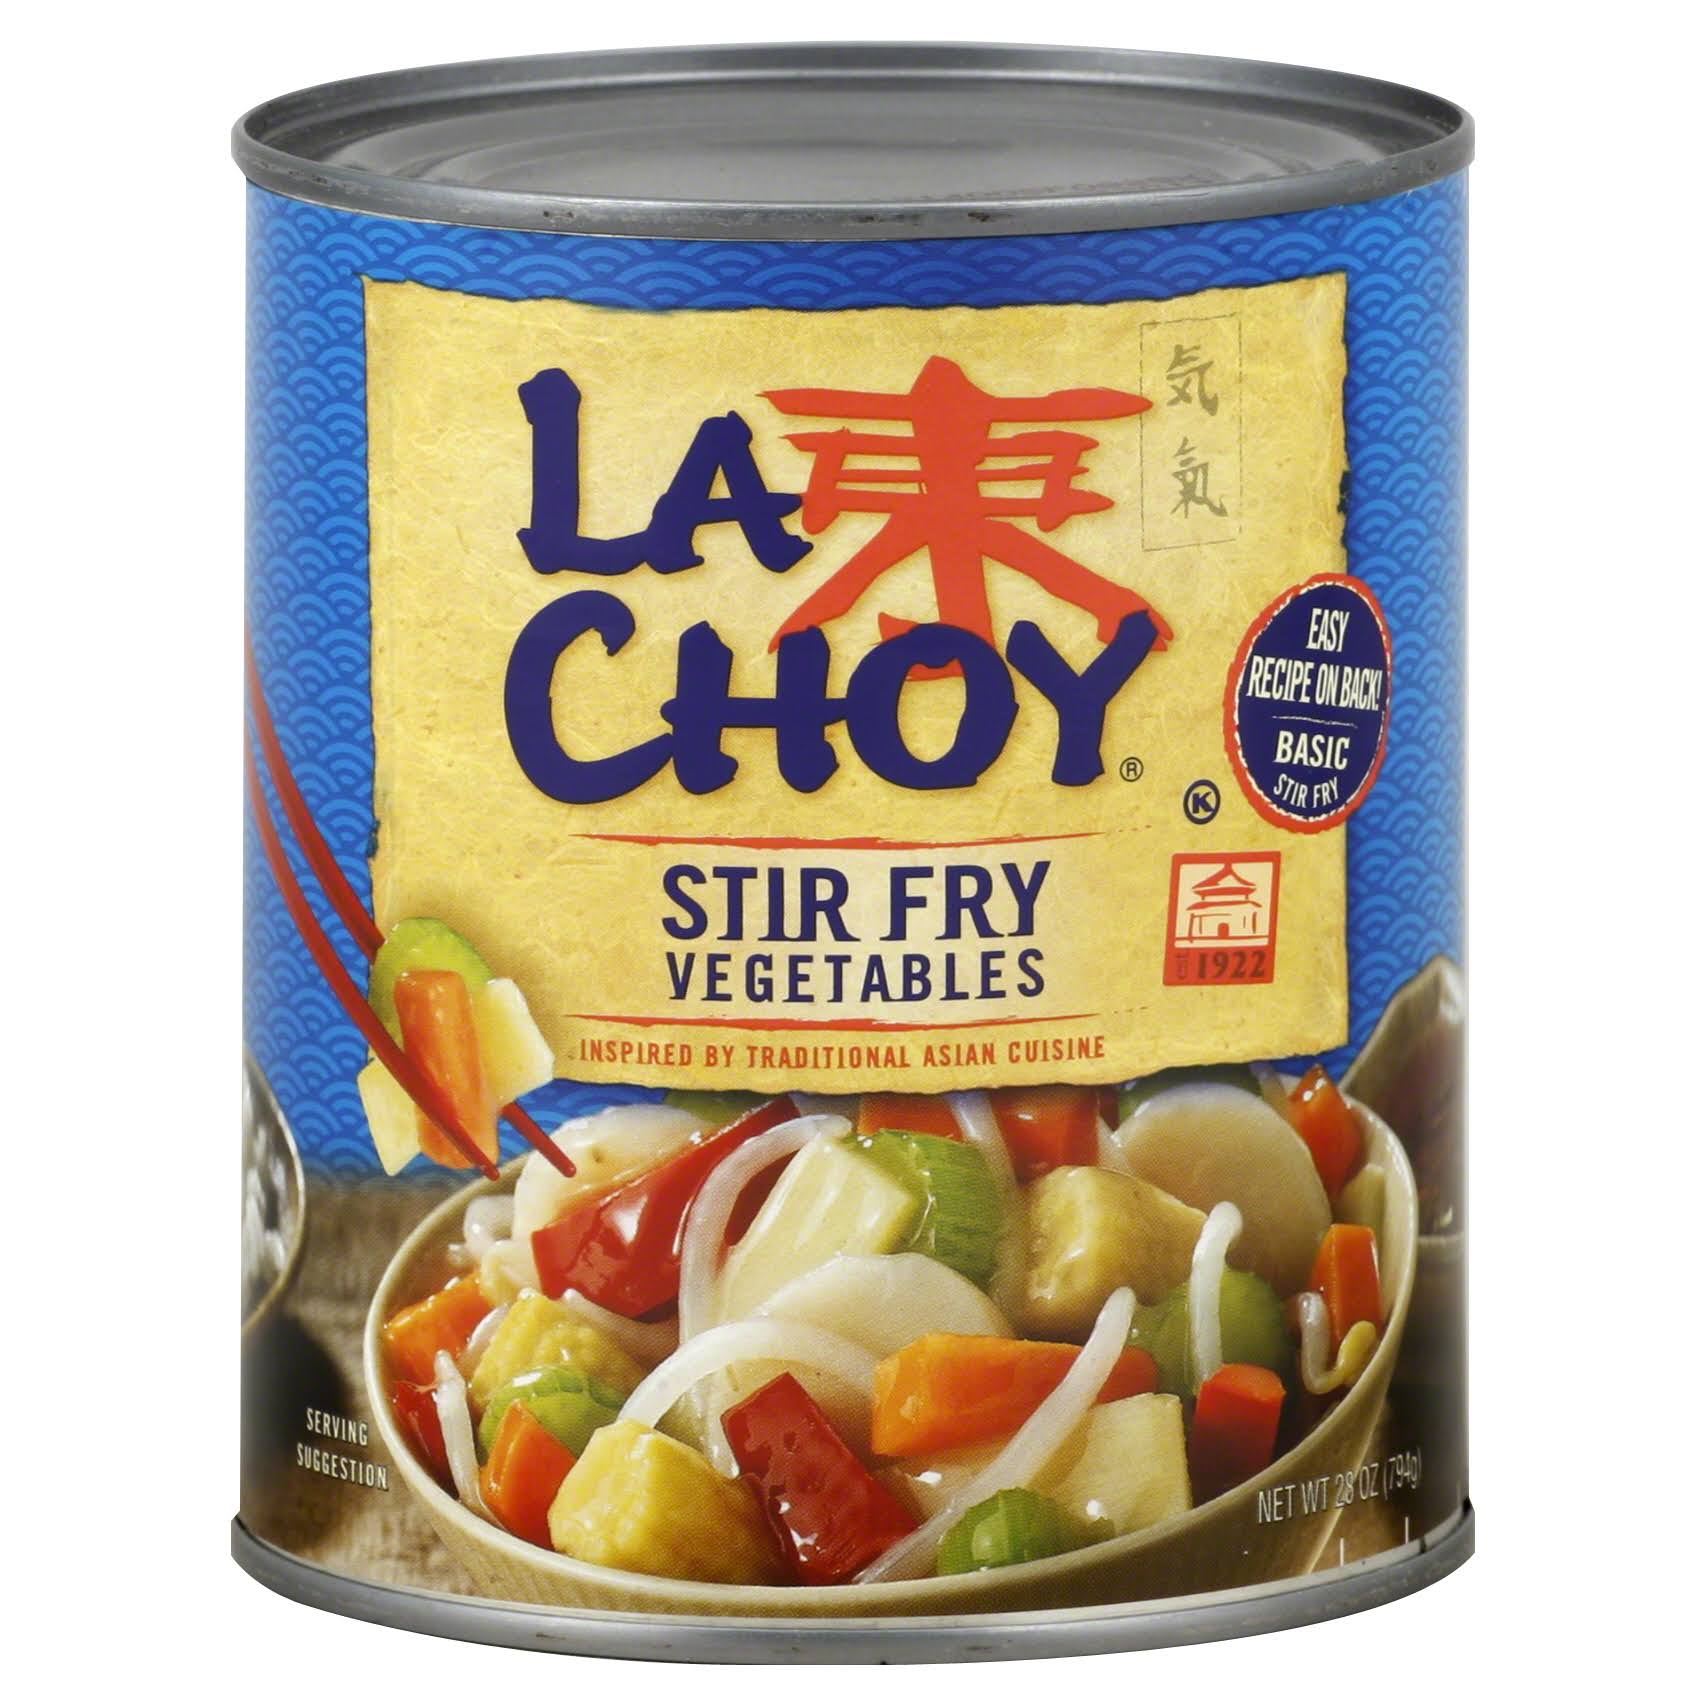 La Choy Vegetables, Stir Fry - 28 oz